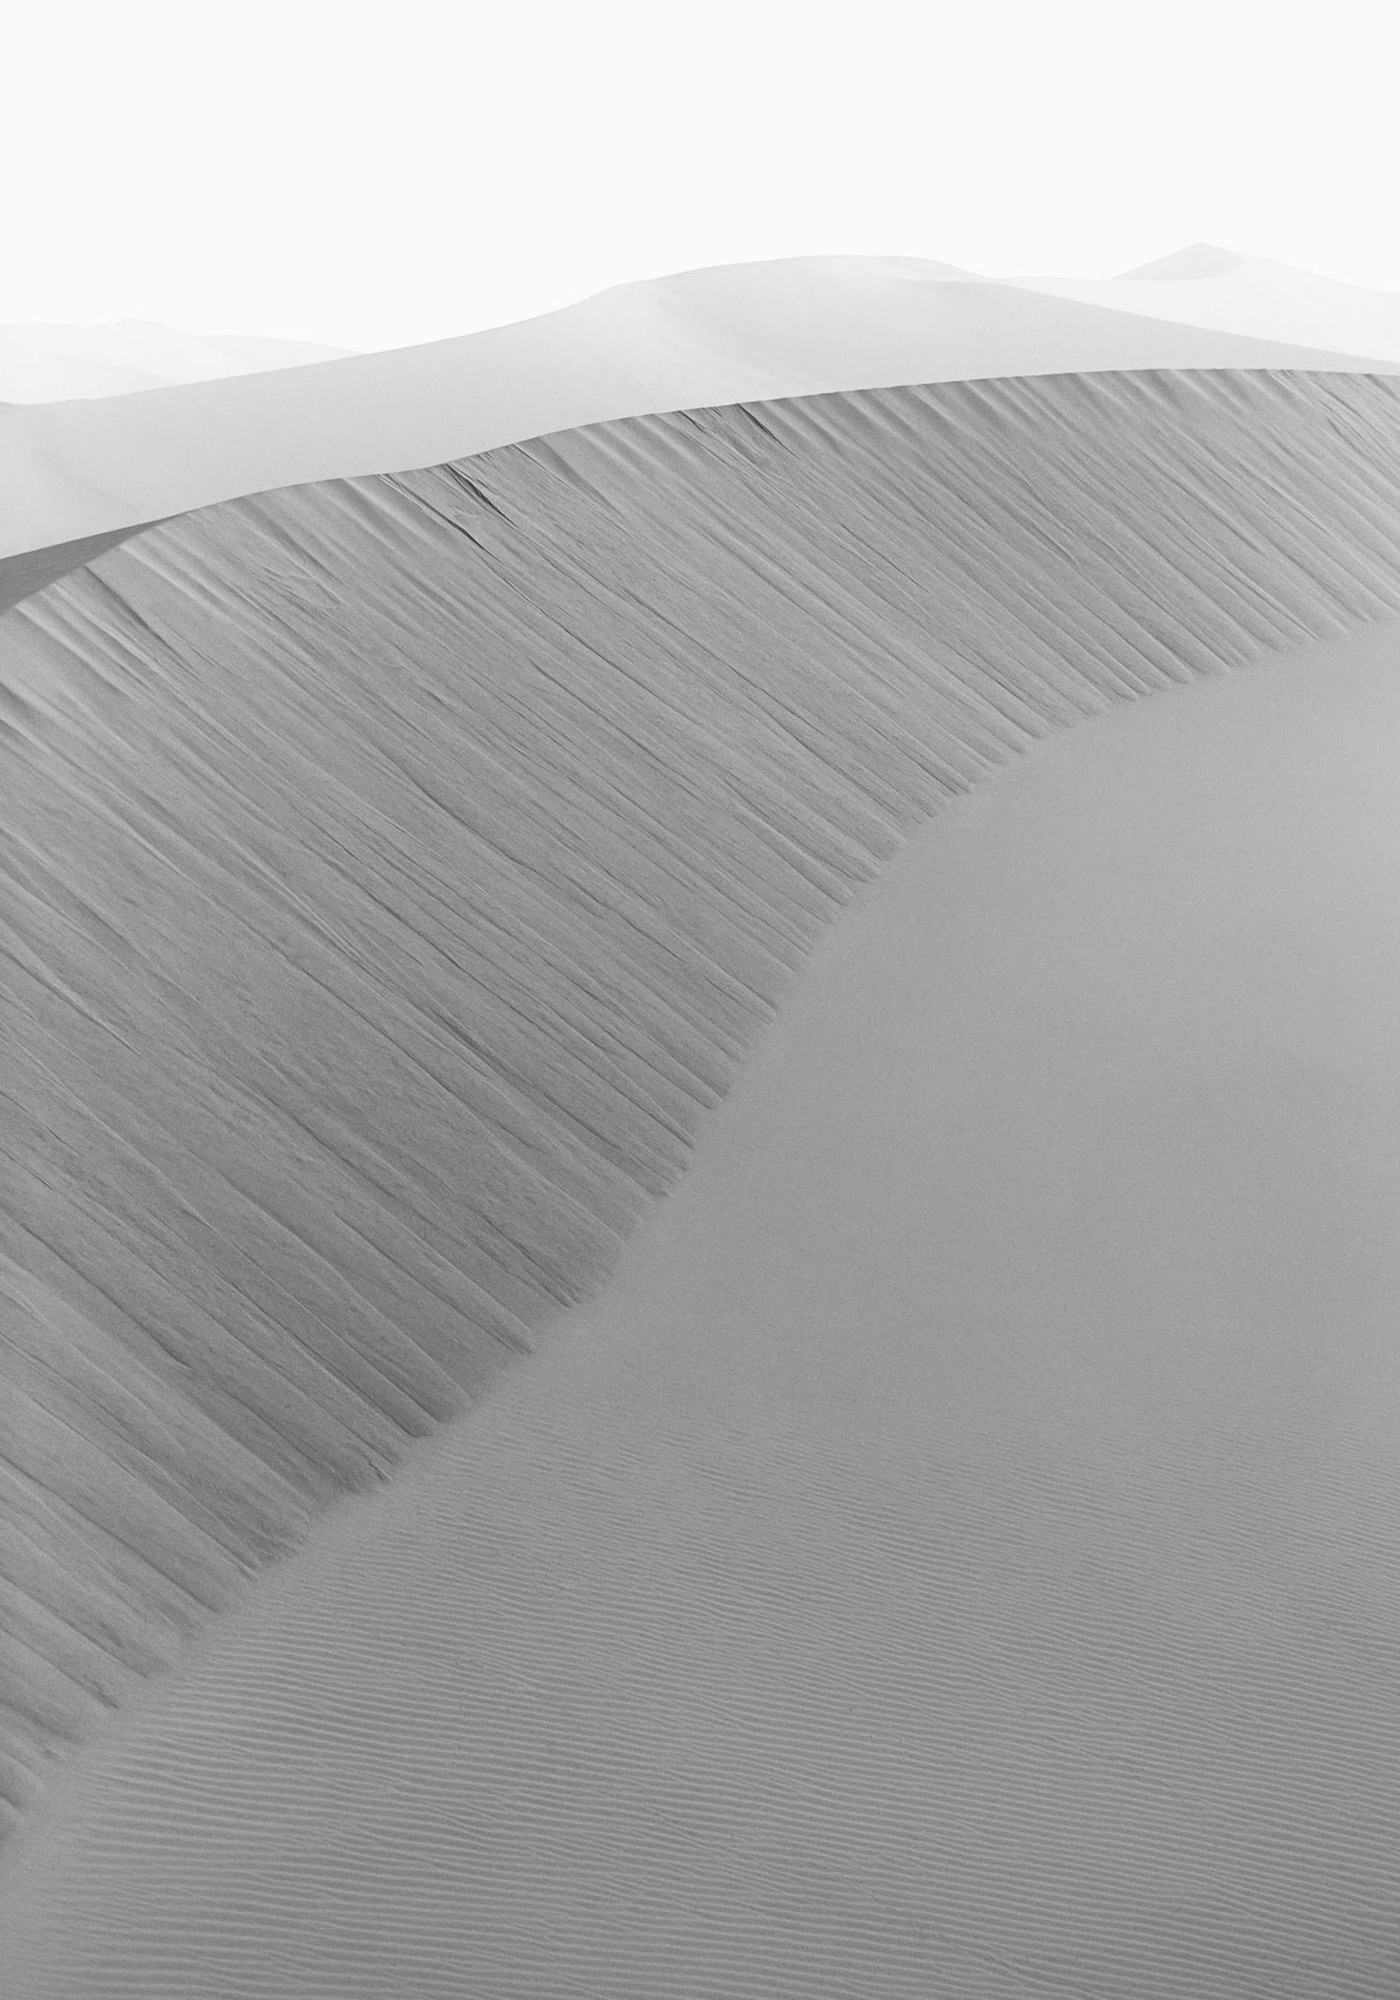 Dunes Landscapes Evolving Drew Doggett